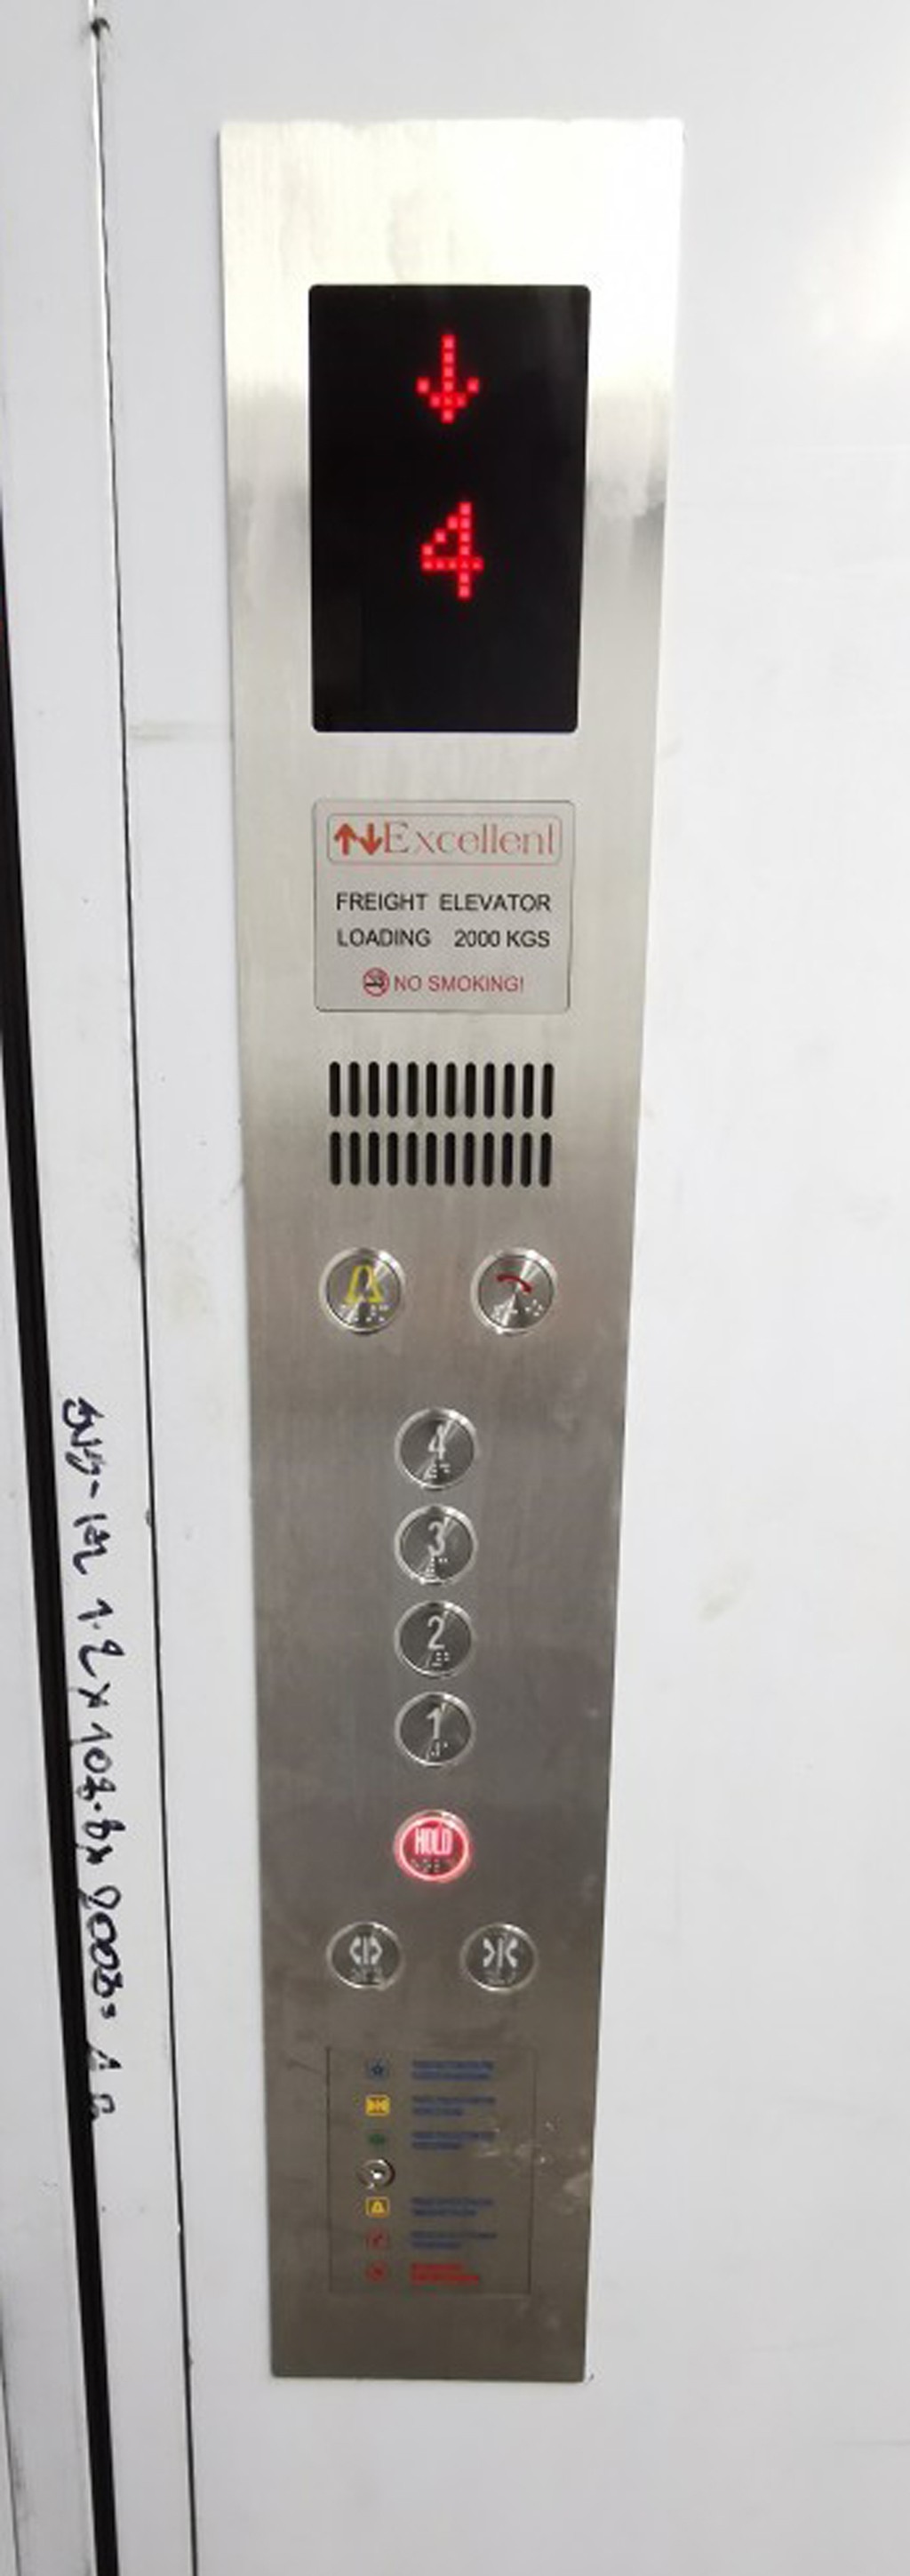 ลิฟท์บรรทุกสินค้า-กึ่งโดยสาร